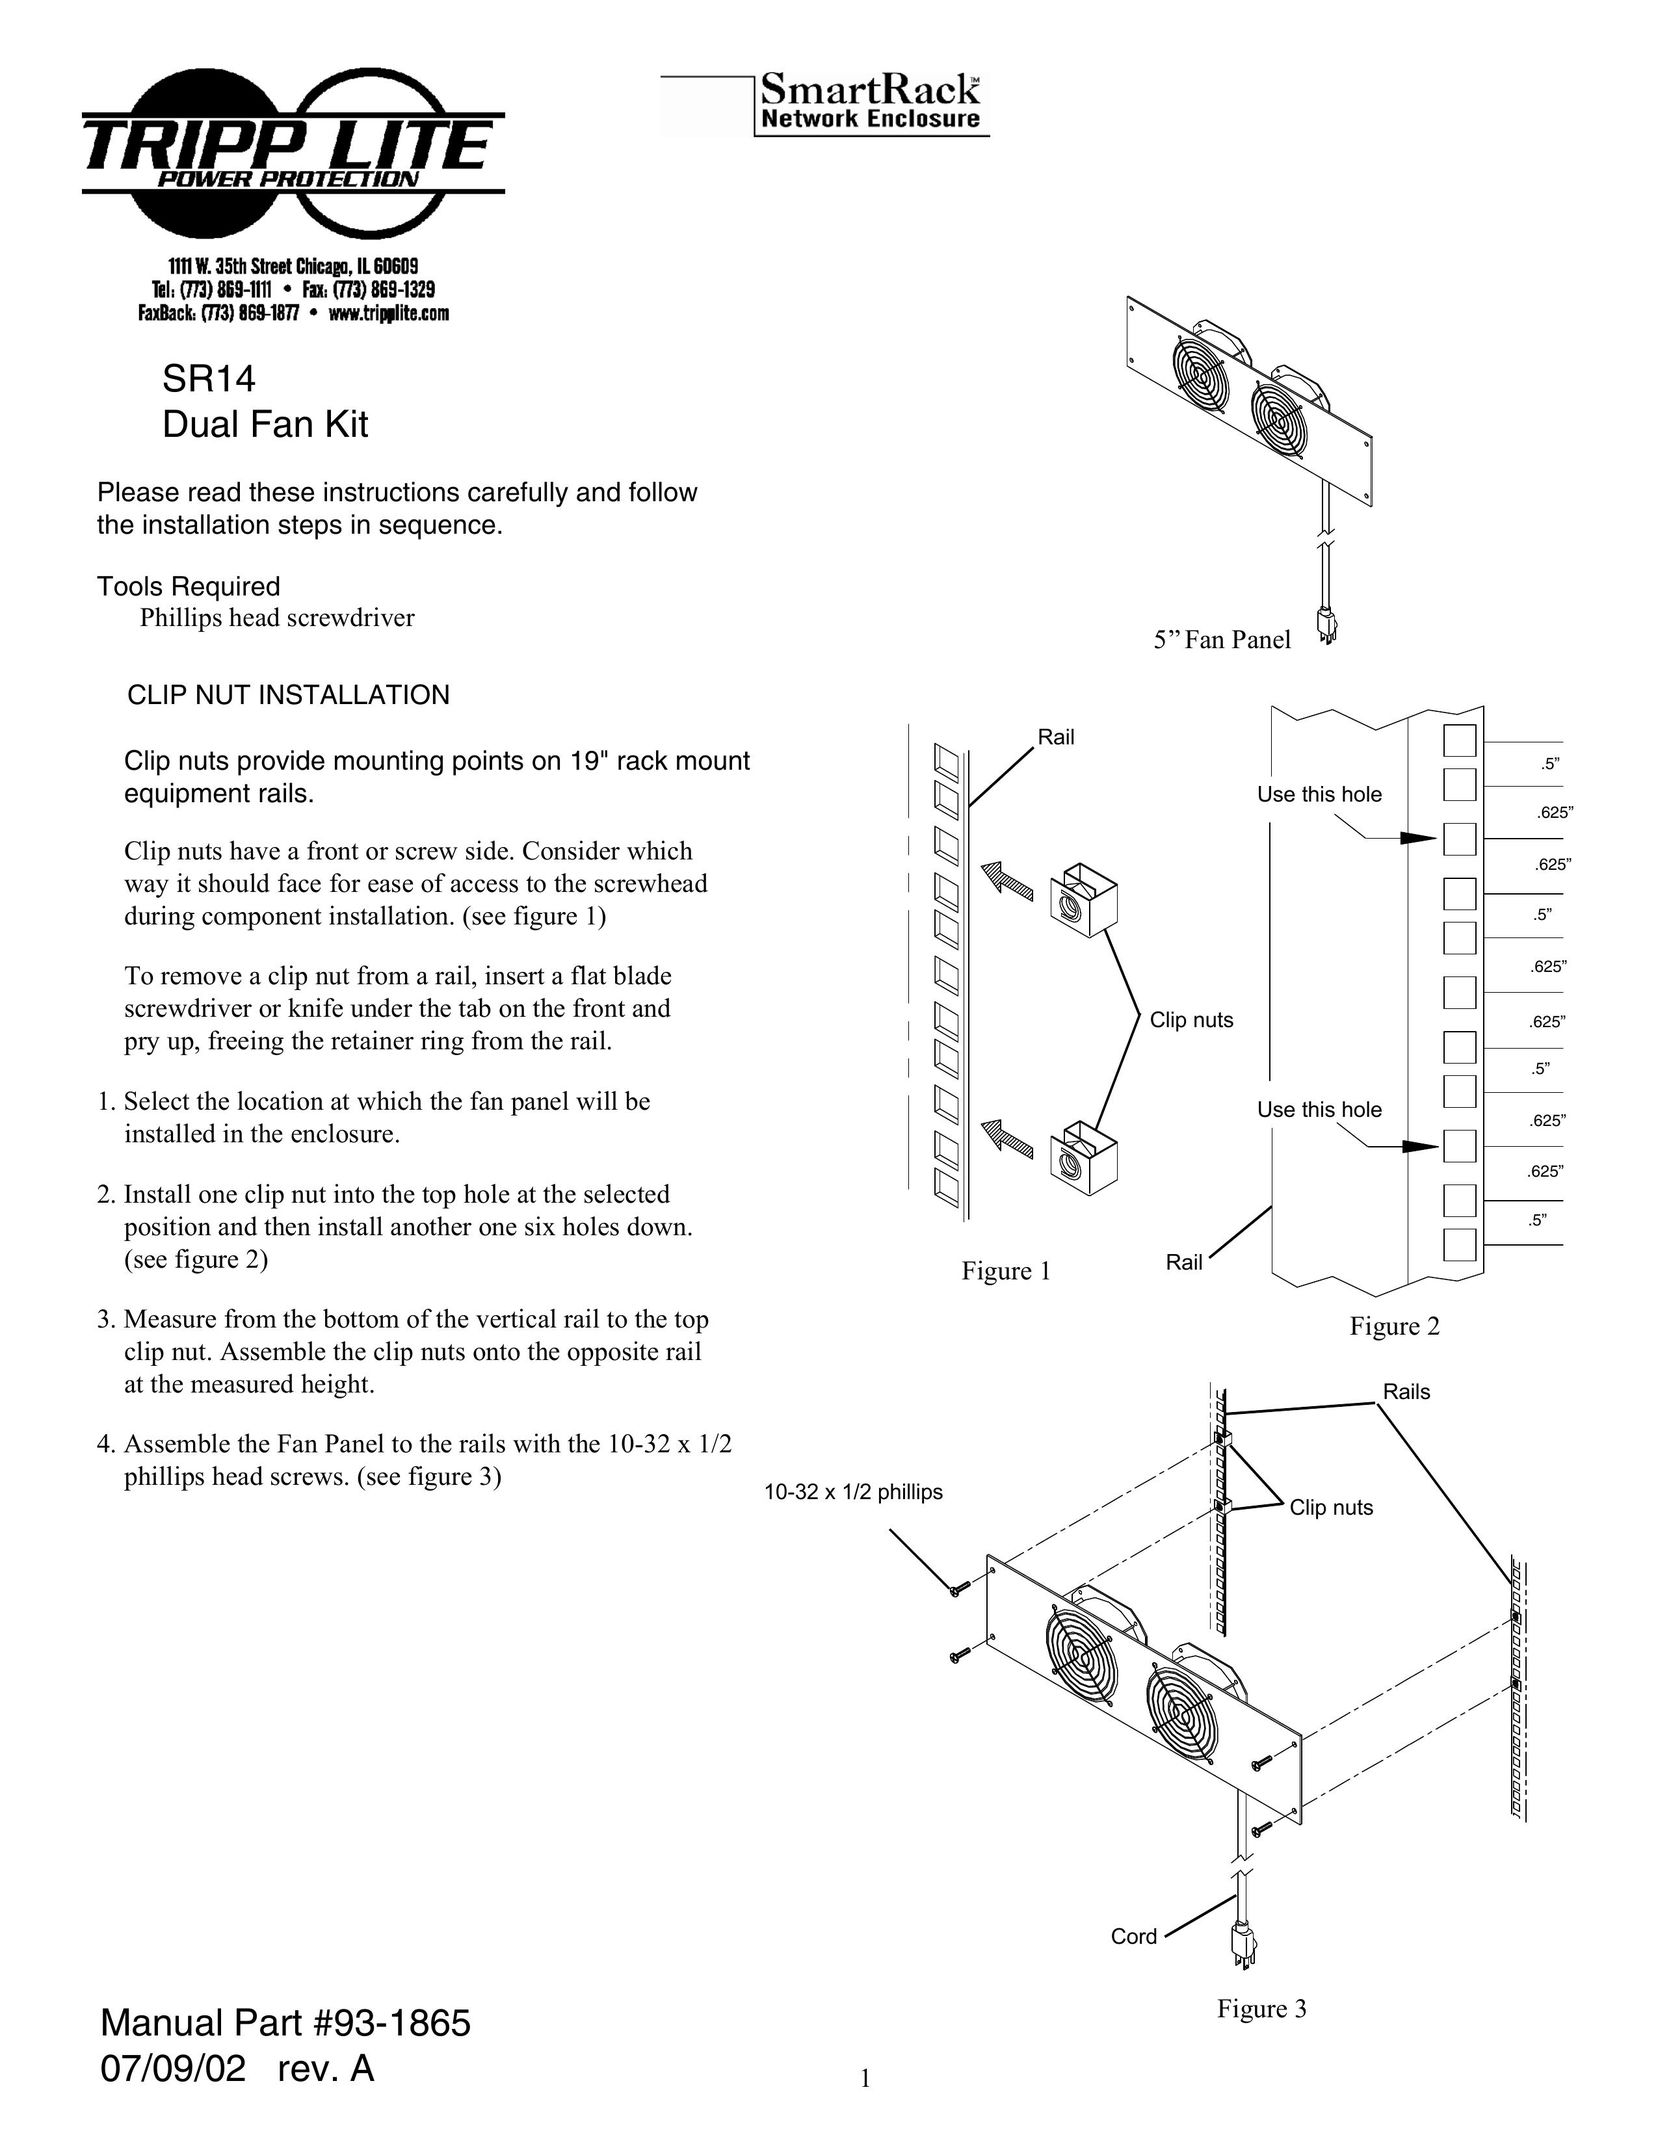 Tripp Lite SR14 Fan User Manual